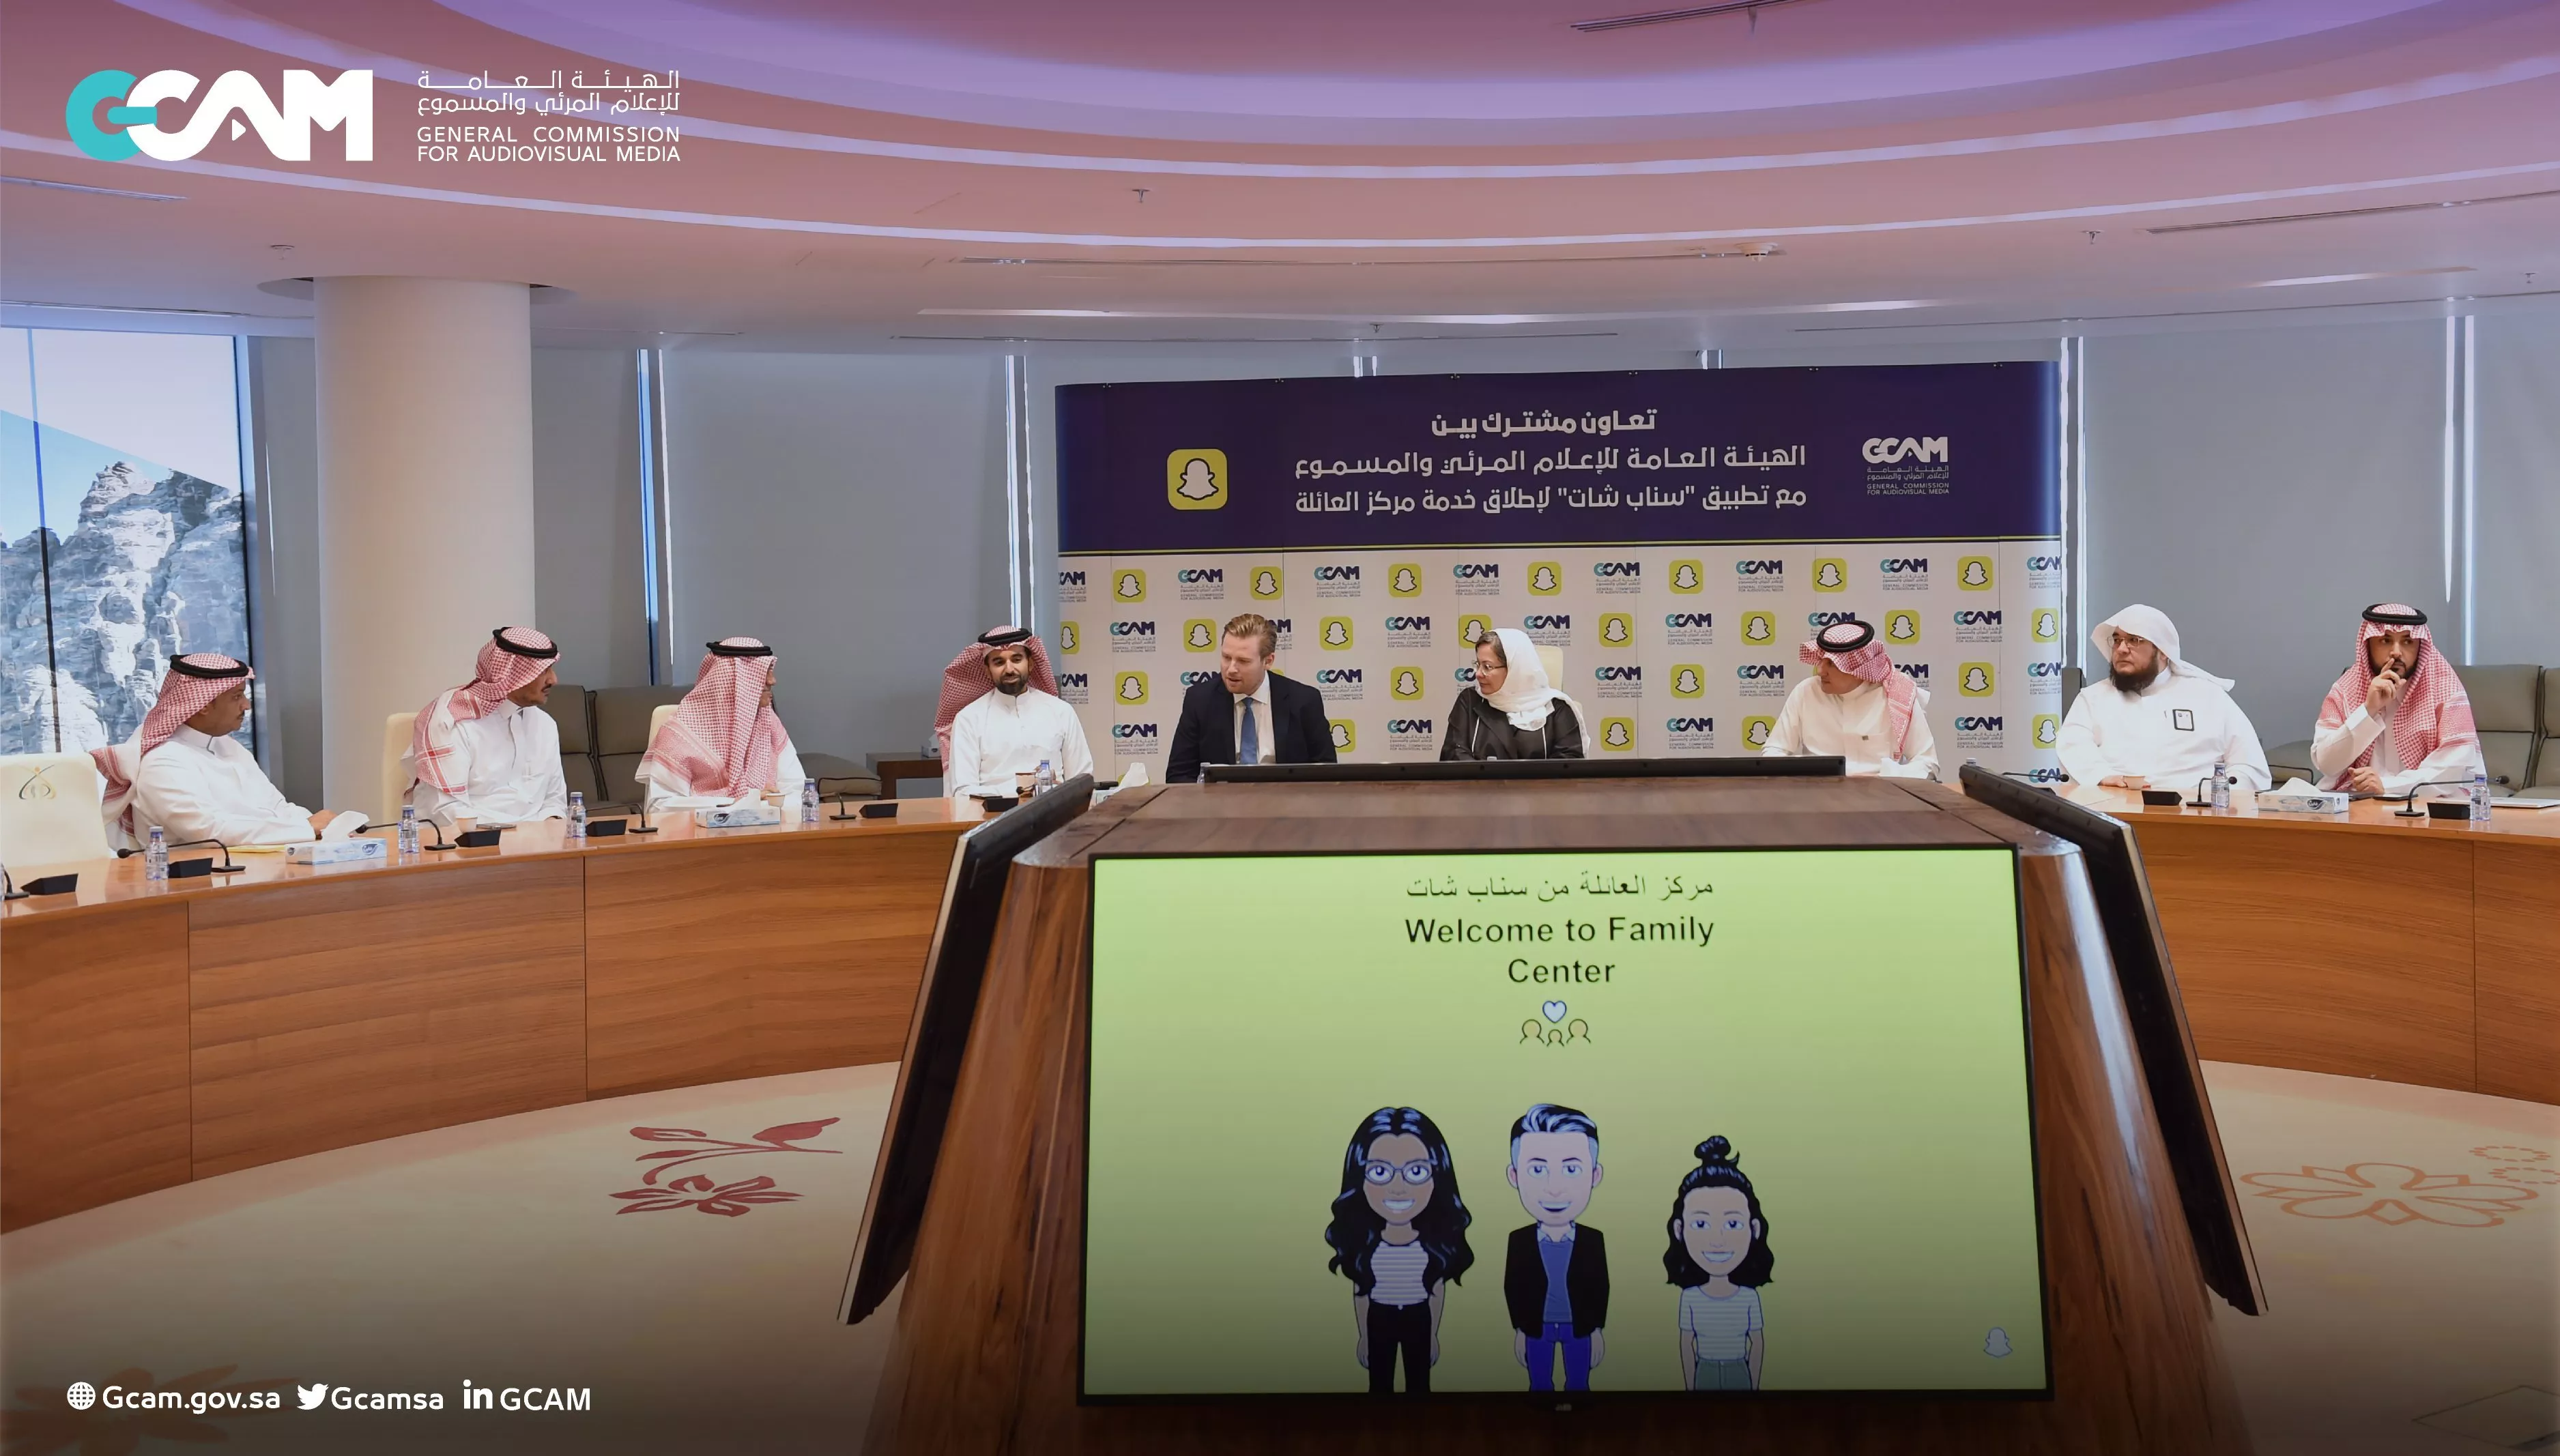 سناب شات تطلق خدمة مركز العائلة لأول مرة في السعودية